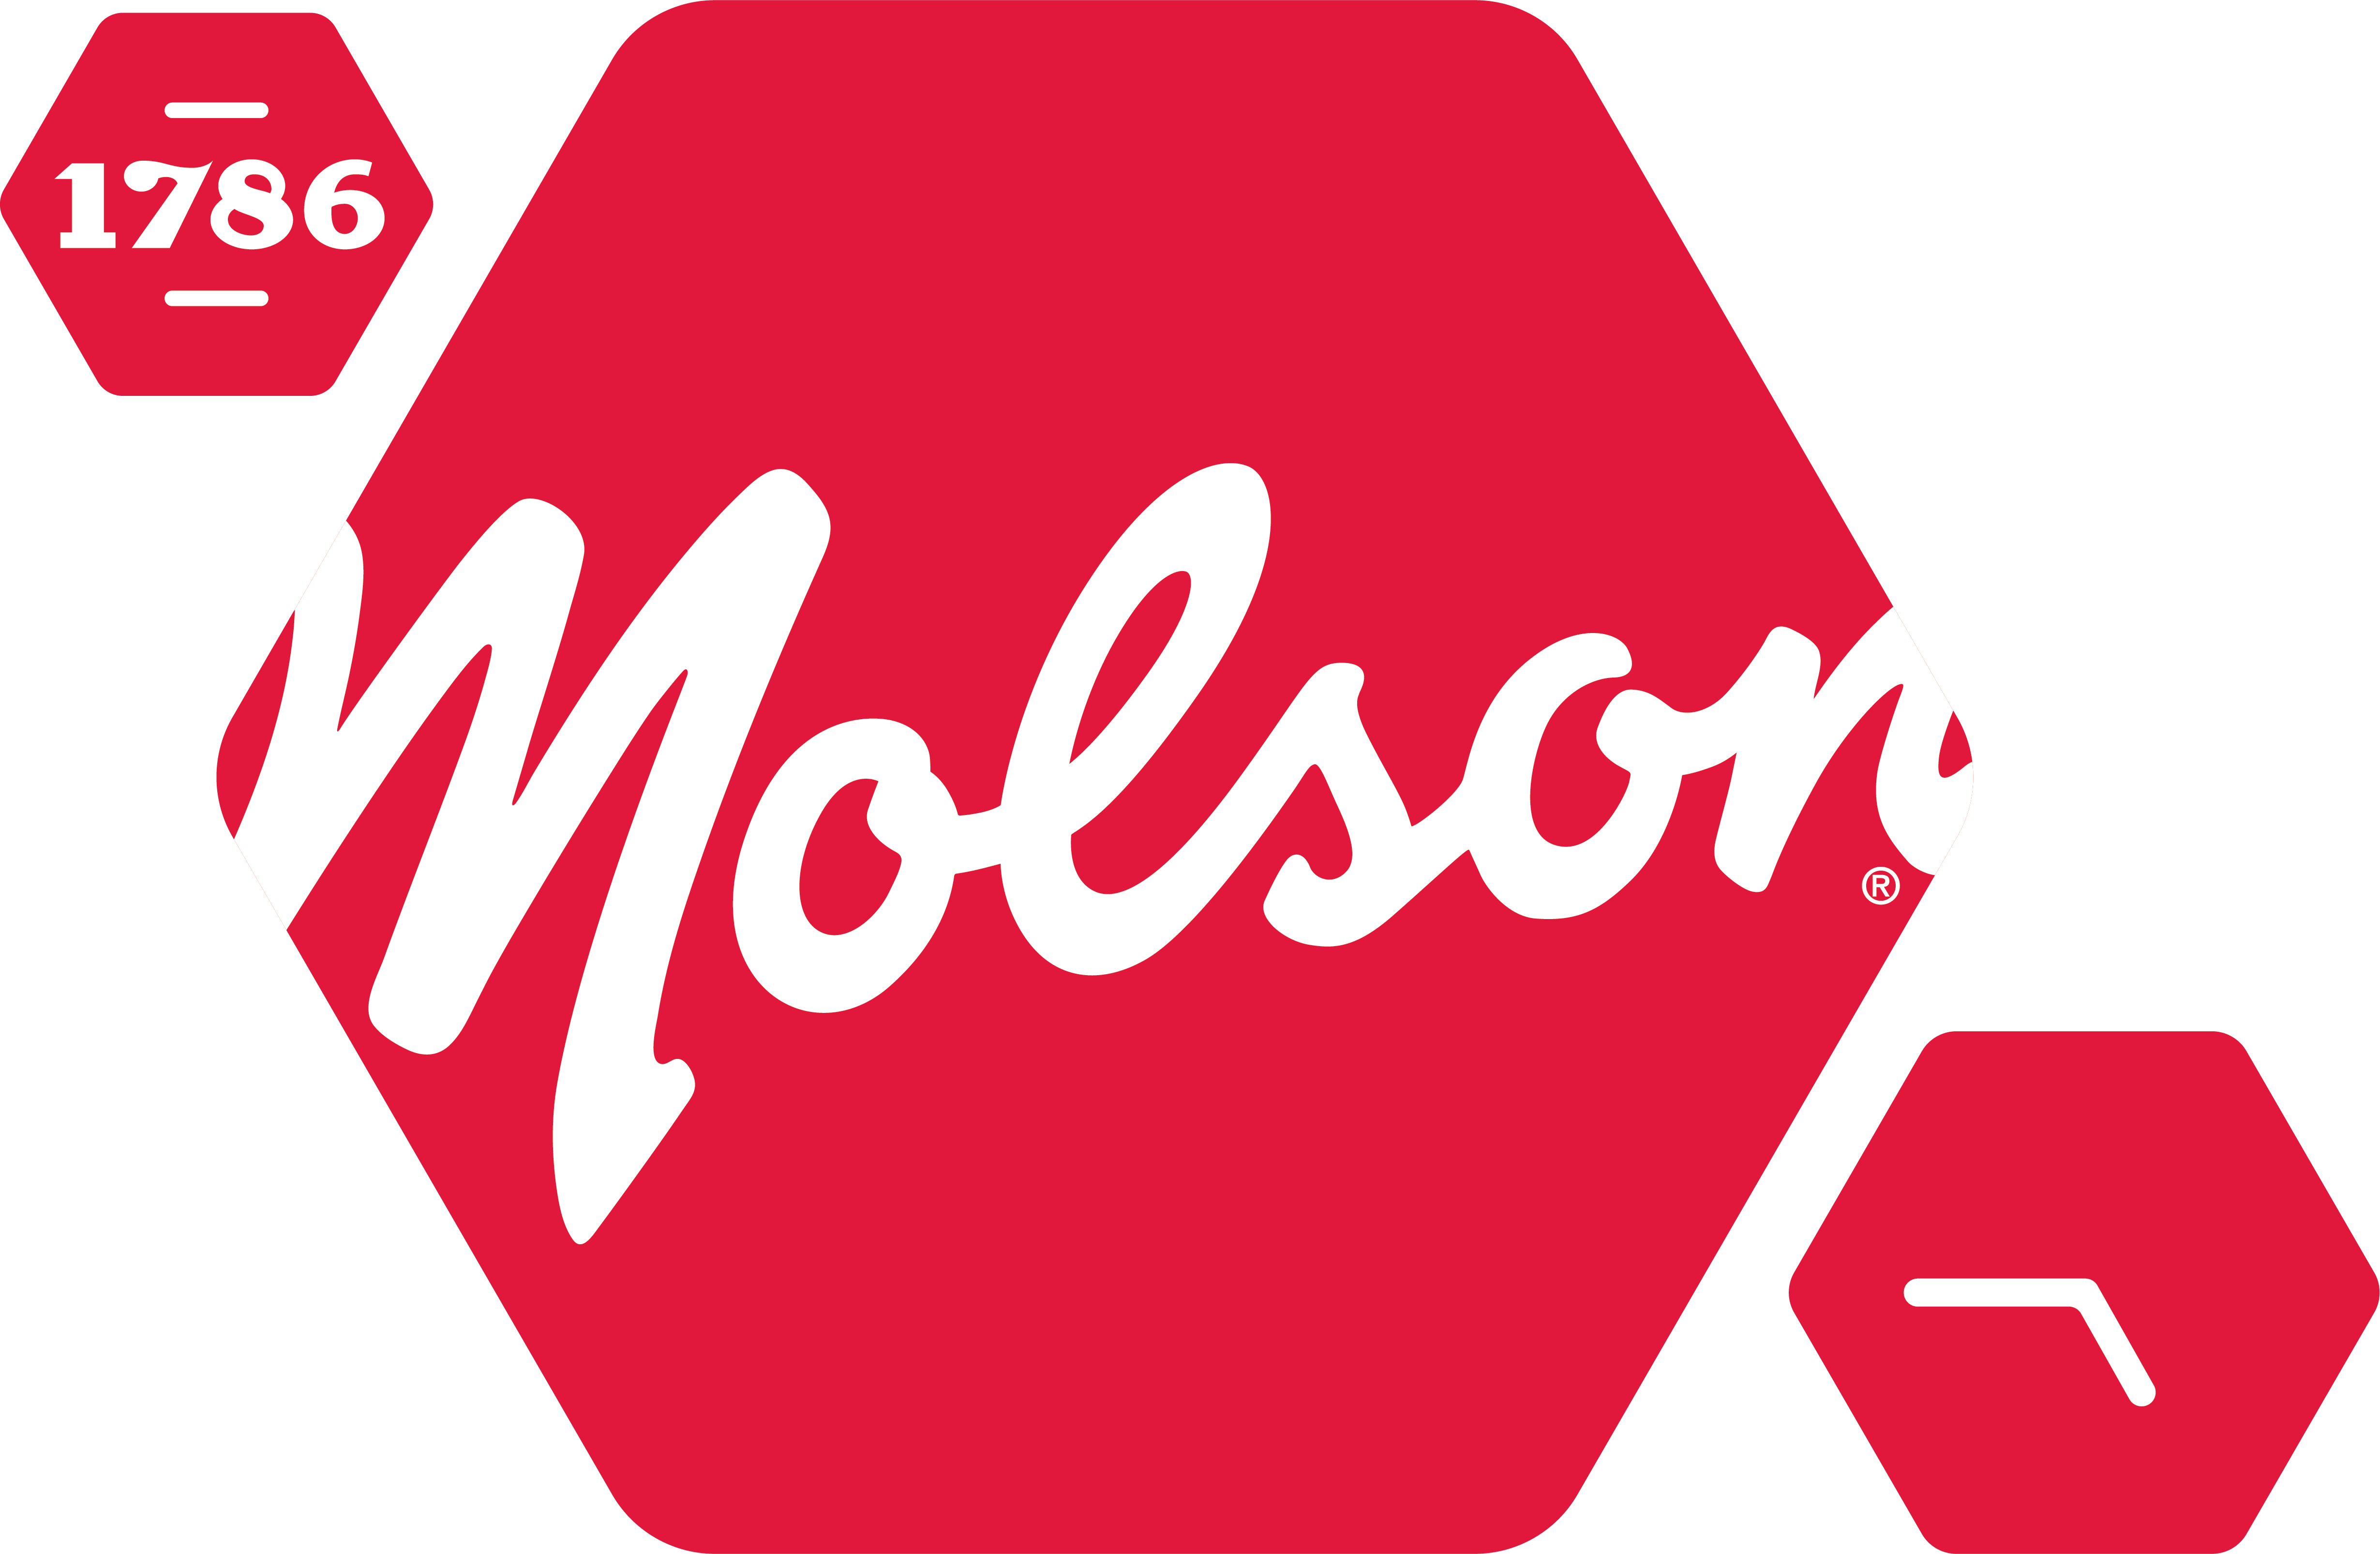 Molson Export Ale